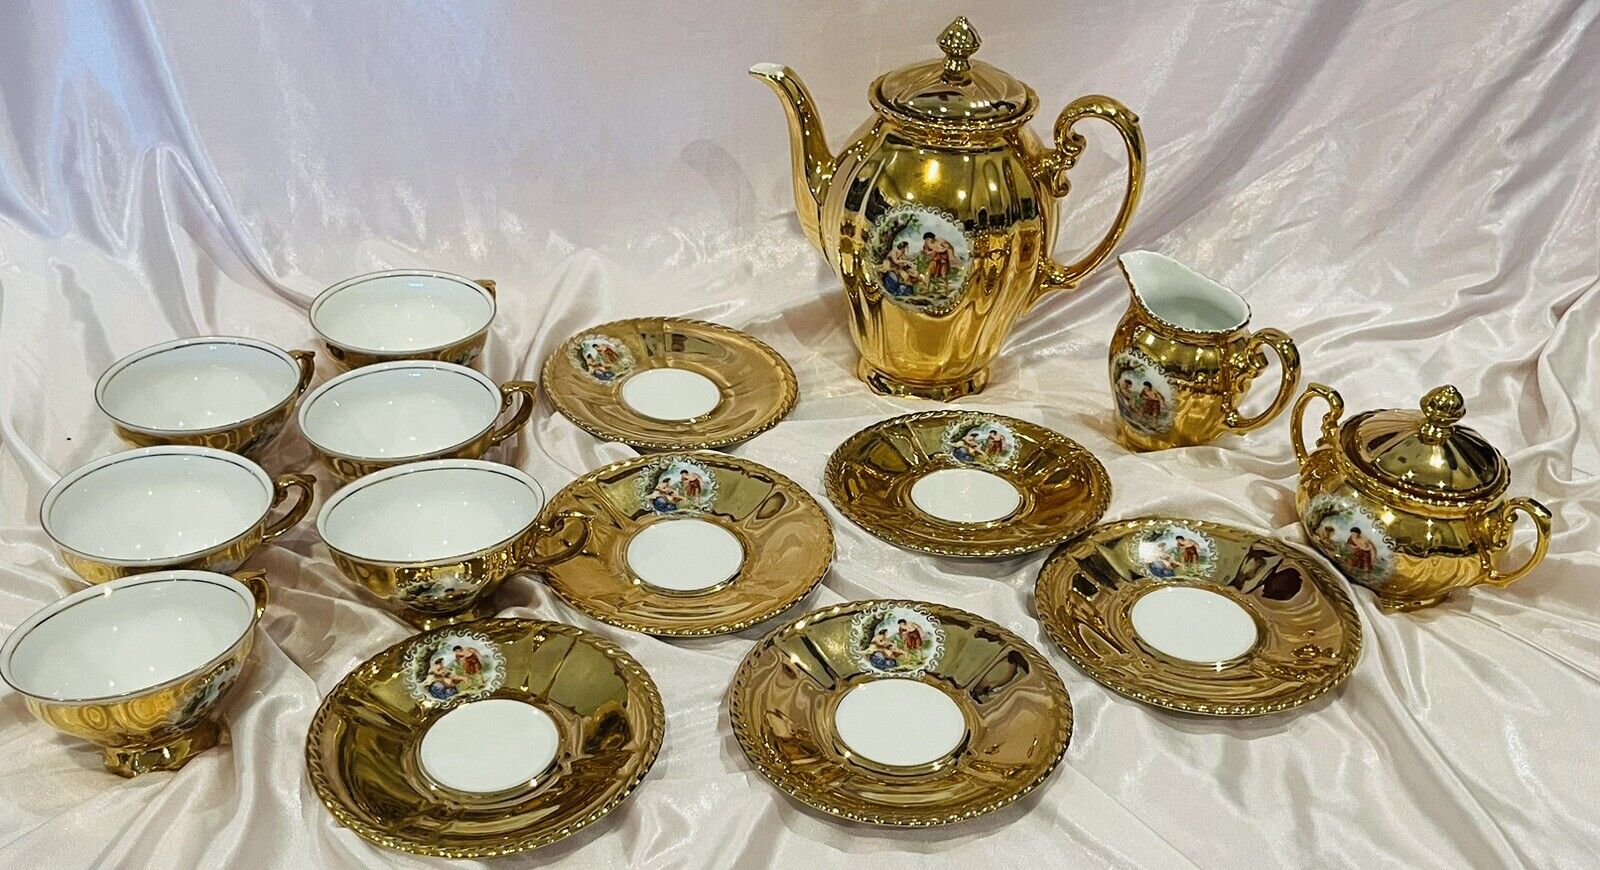 Vintage Gold Tea Set bavarian Porcelain From germany